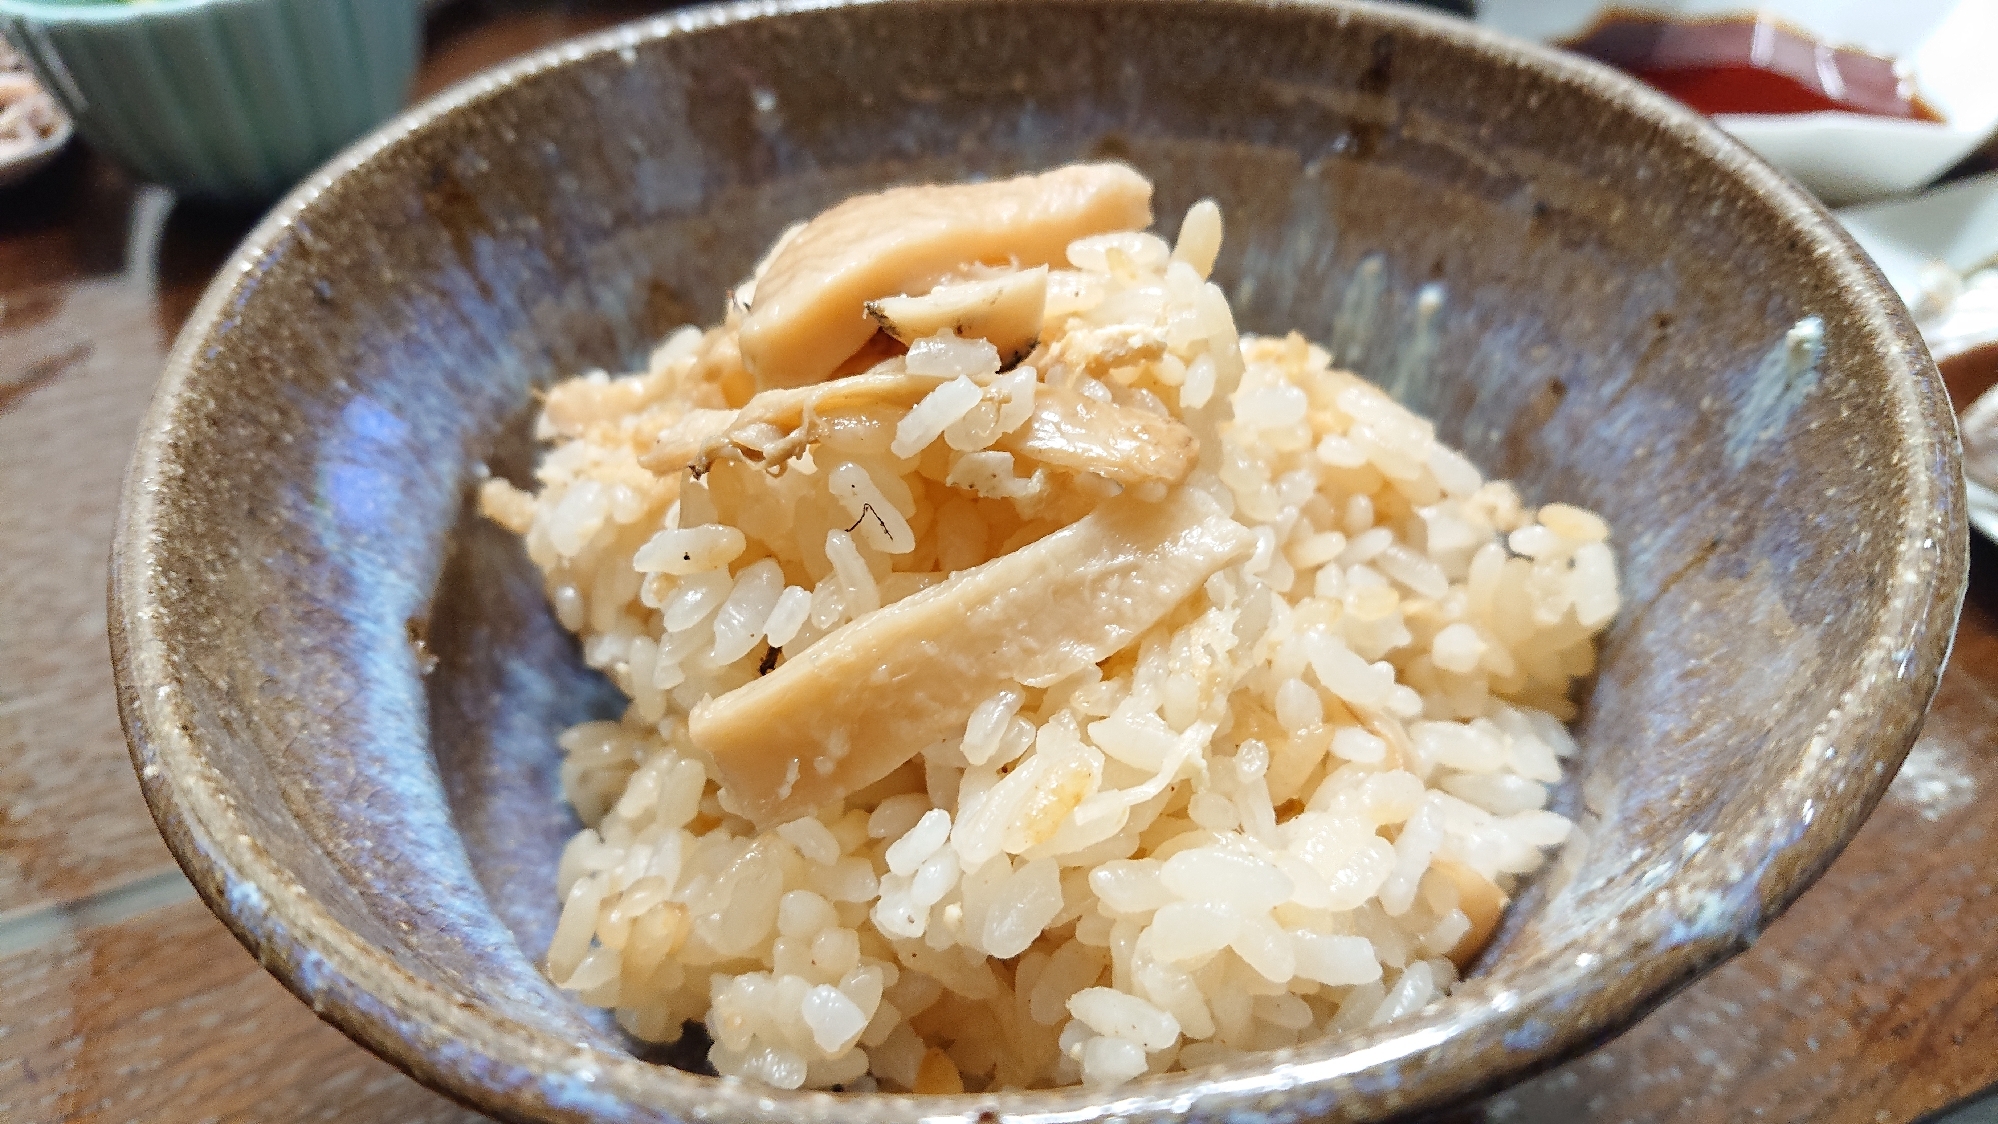 松茸ご飯(餅米入り)